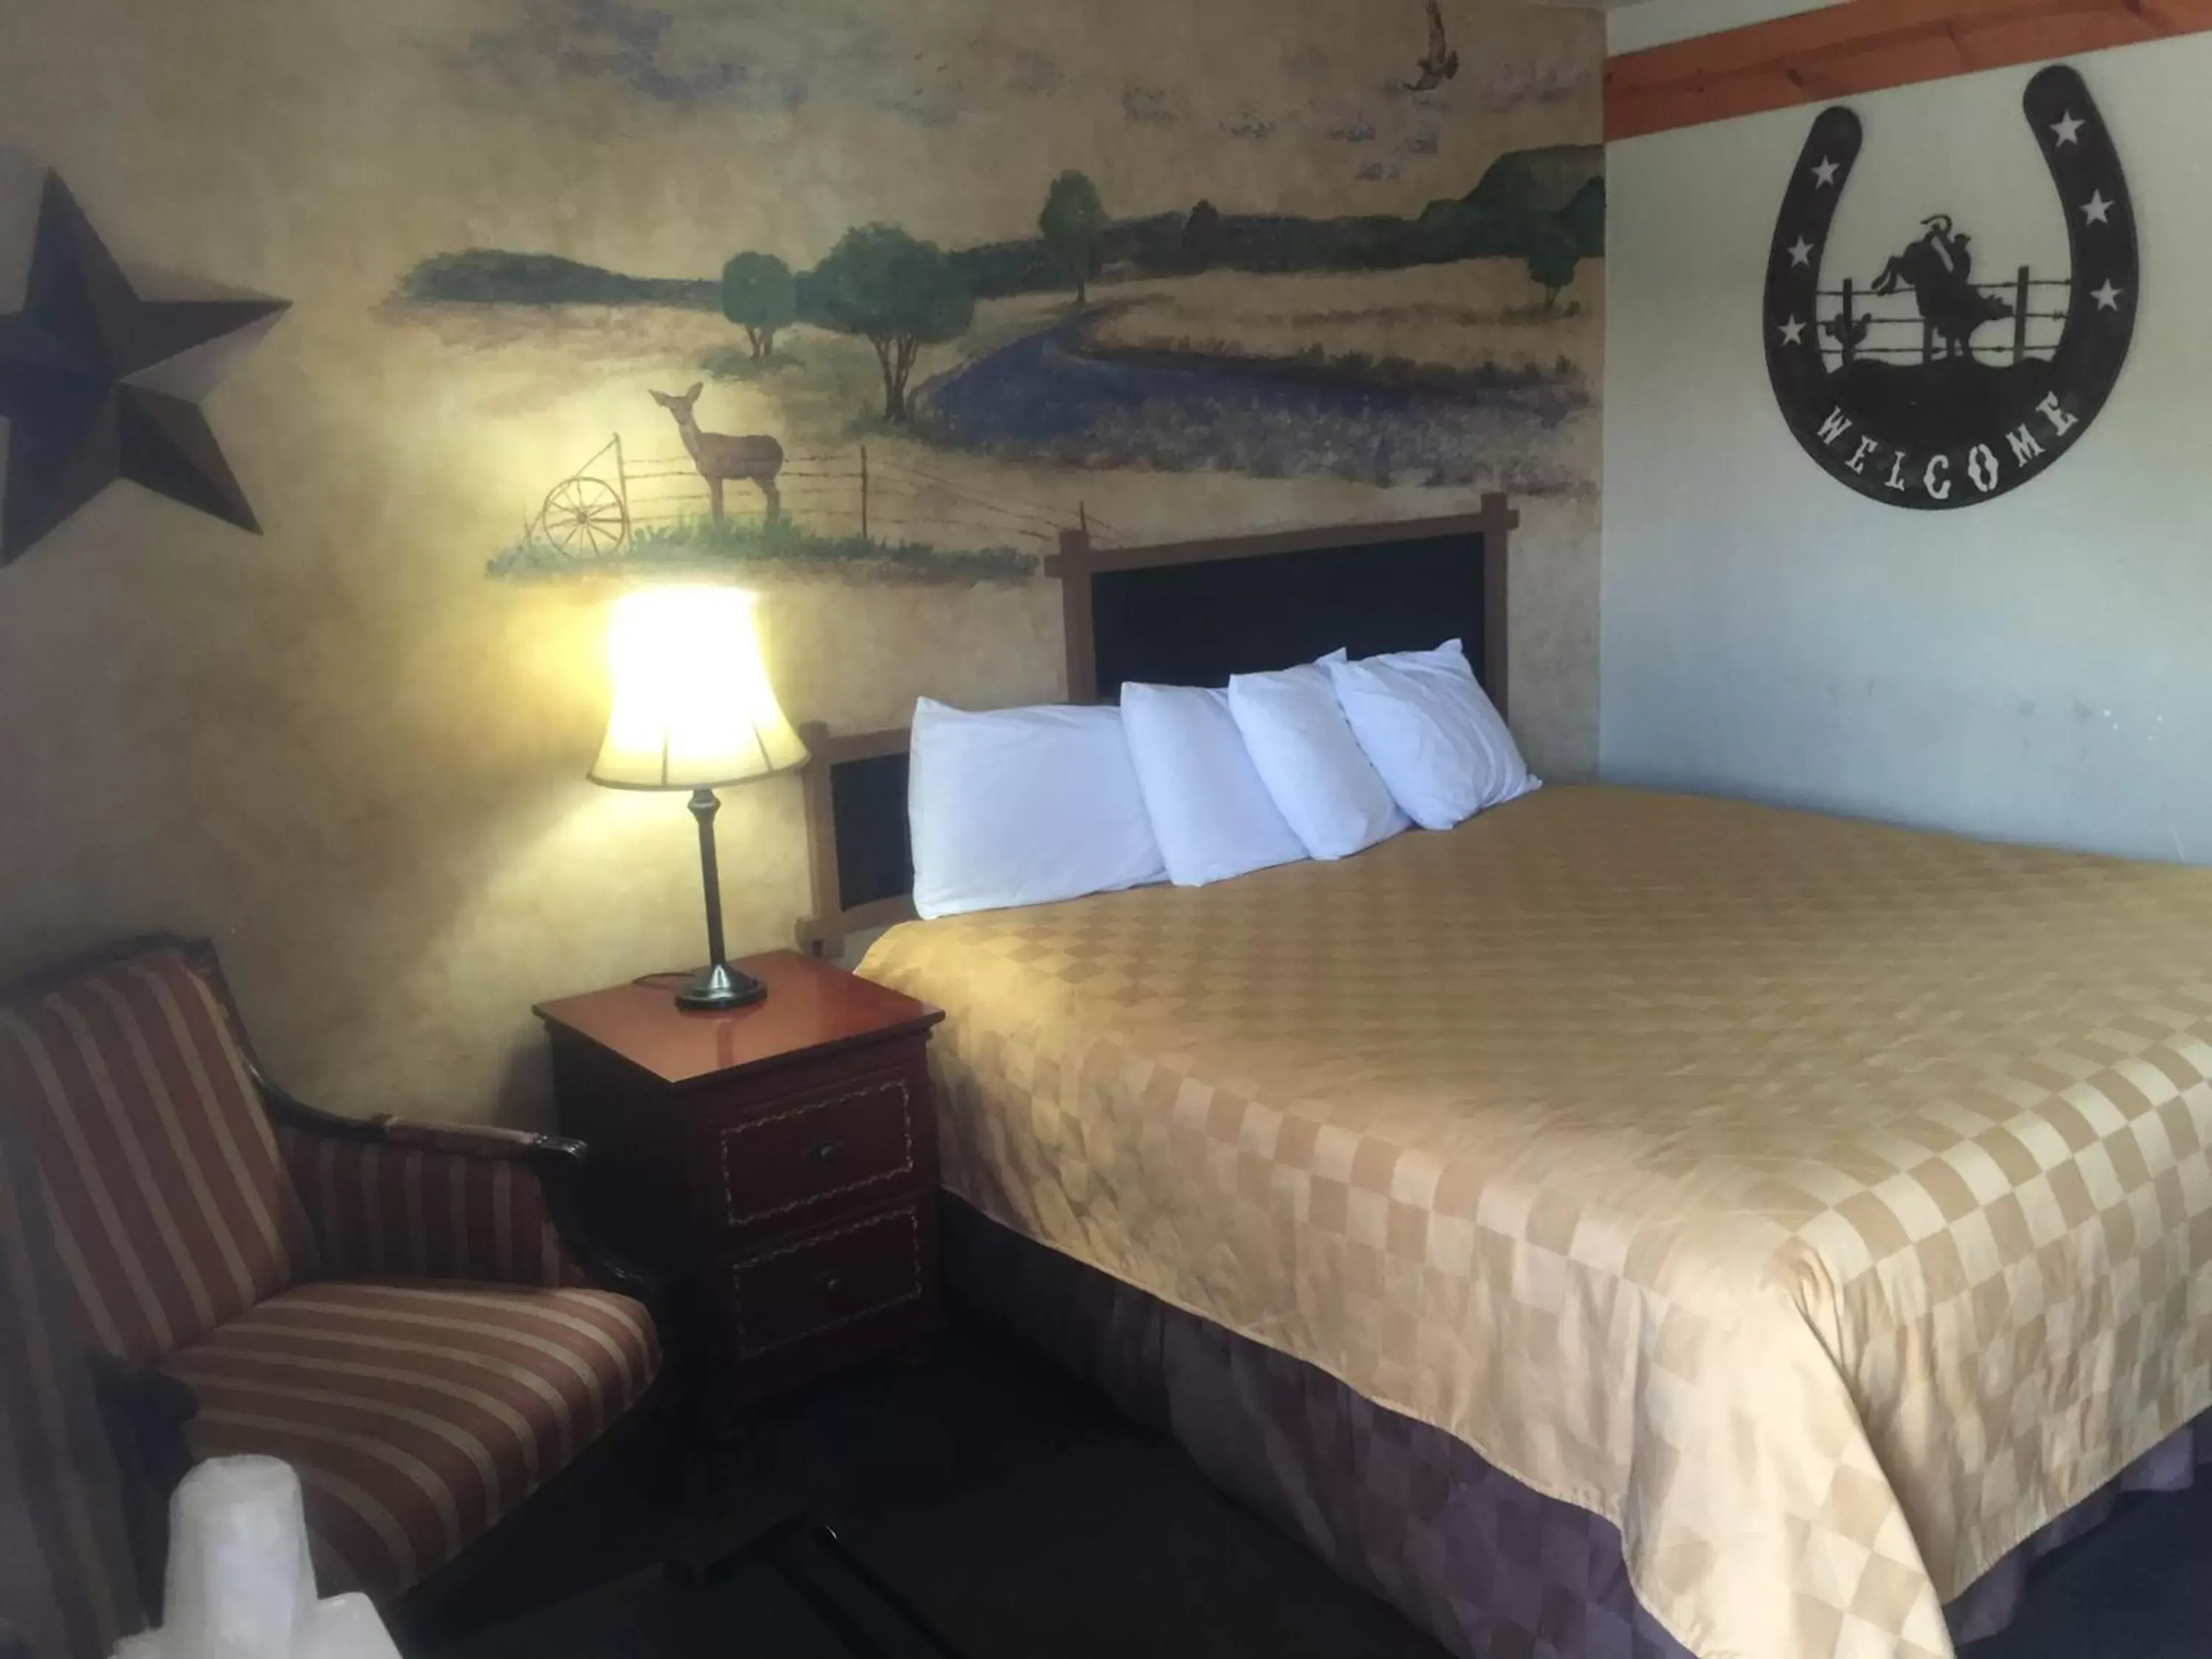 Bed, Room Photo in Americas Best Value Inn - Legend's Inn